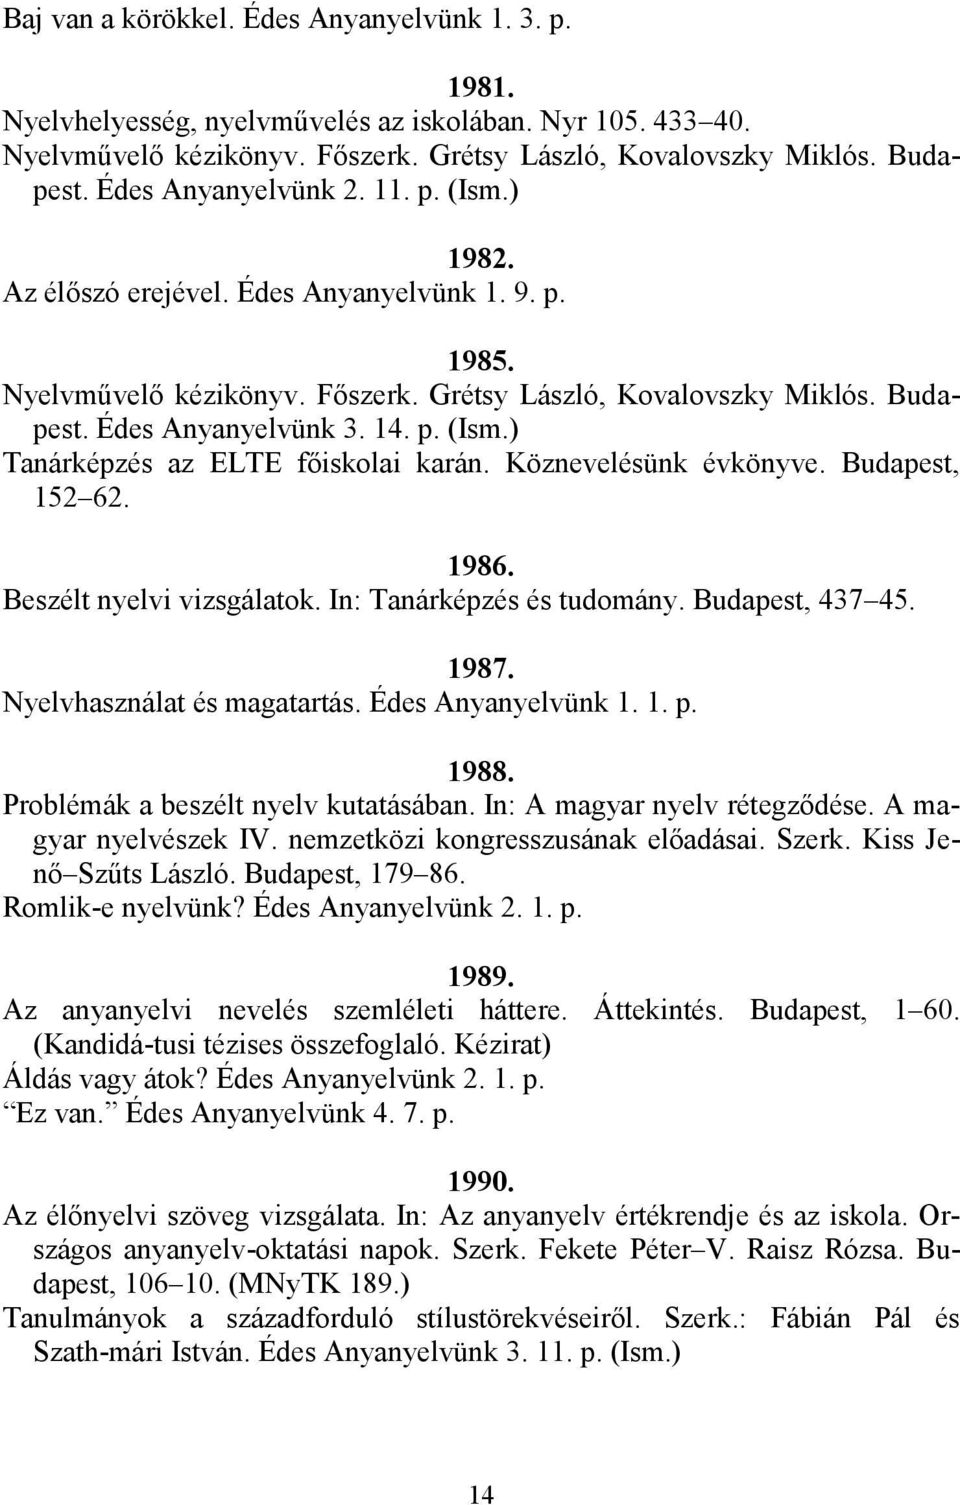 Köznevelésünk évkönyve. Budapest, 152 62. 1986. Beszélt nyelvi vizsgálatok. In: Tanárképzés és tudomány. Budapest, 437 45. 1987. Nyelvhasználat és magatartás. Édes Anyanyelvünk 1. 1. p. 1988.